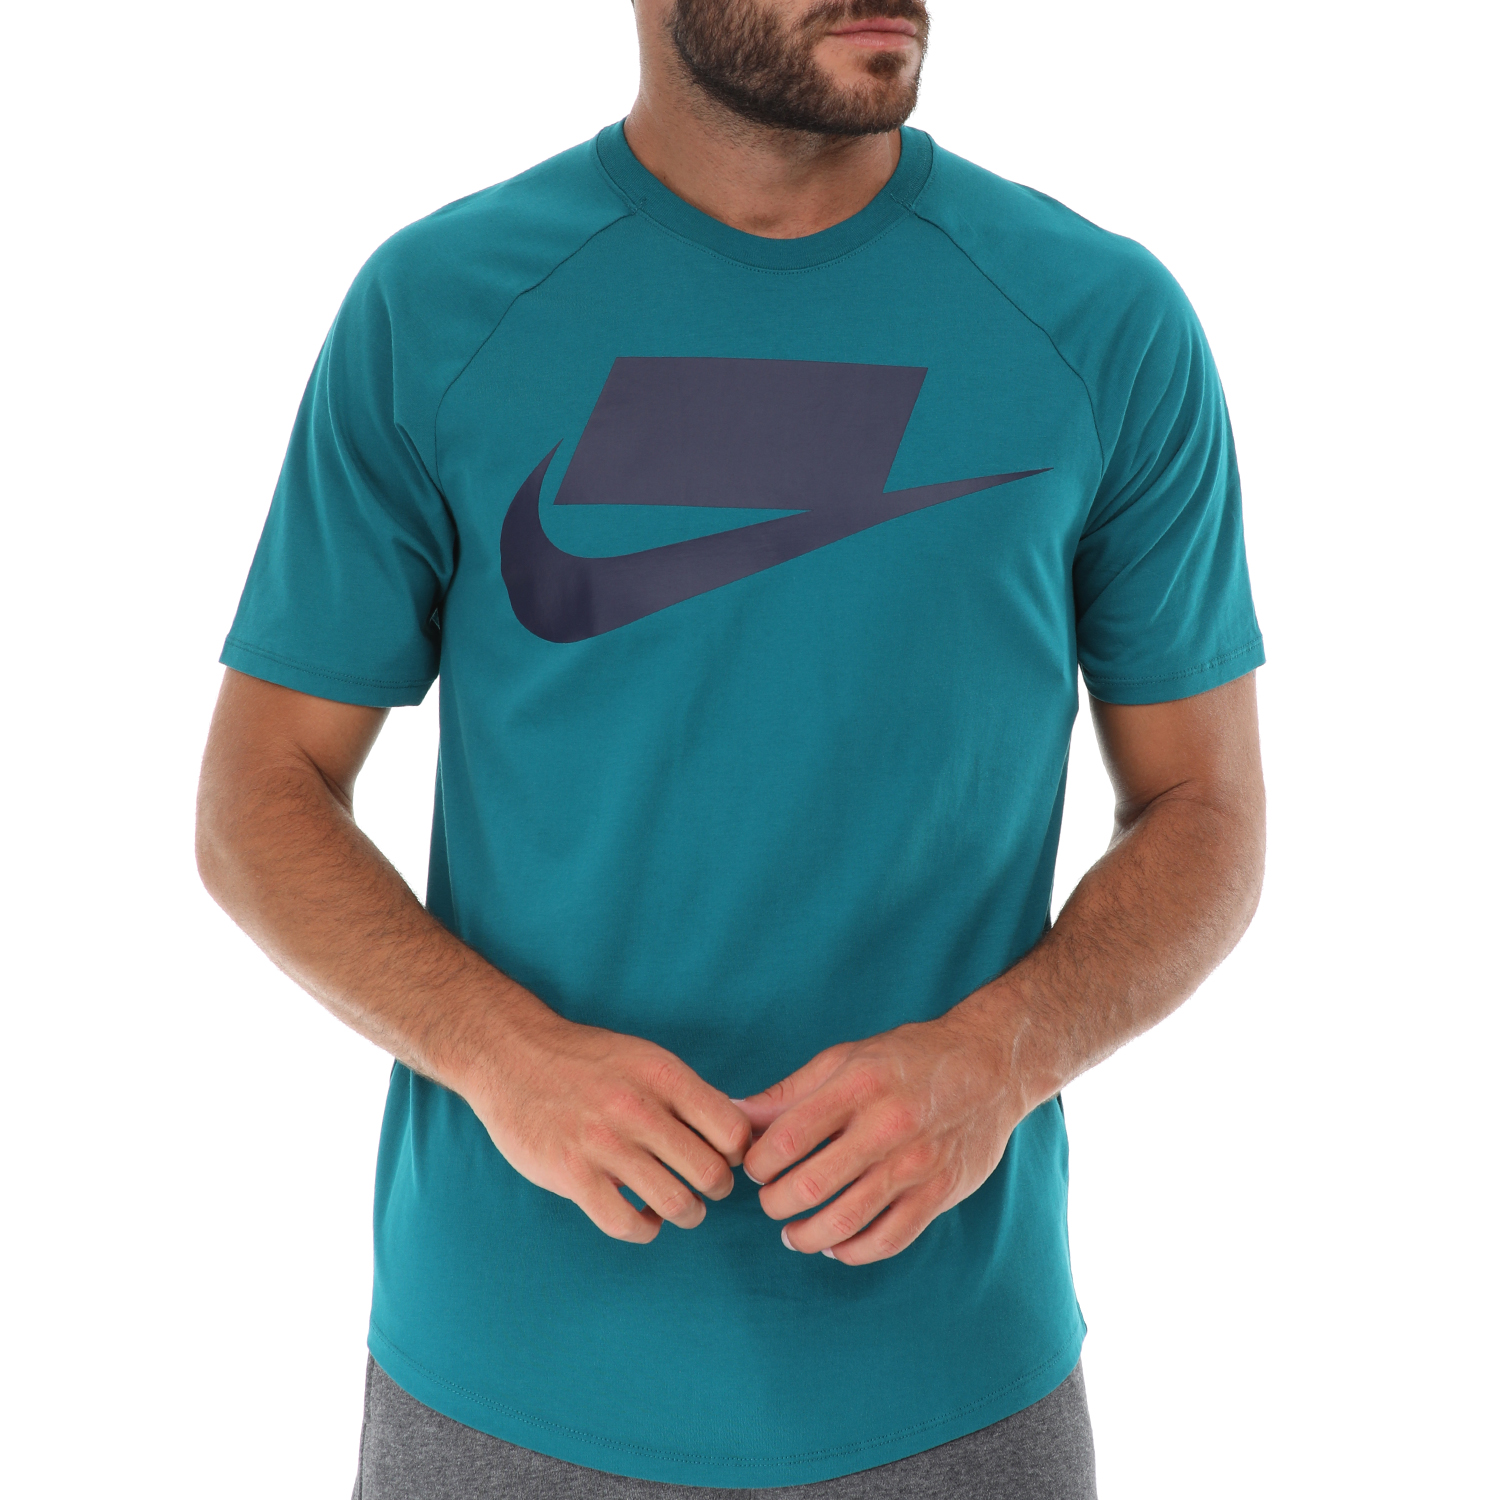 Ανδρικά/Ρούχα/Αθλητικά/T-shirt NIKE - Ανδρικό t-shirt NIKE SPORTSWEAR 1 μπλε